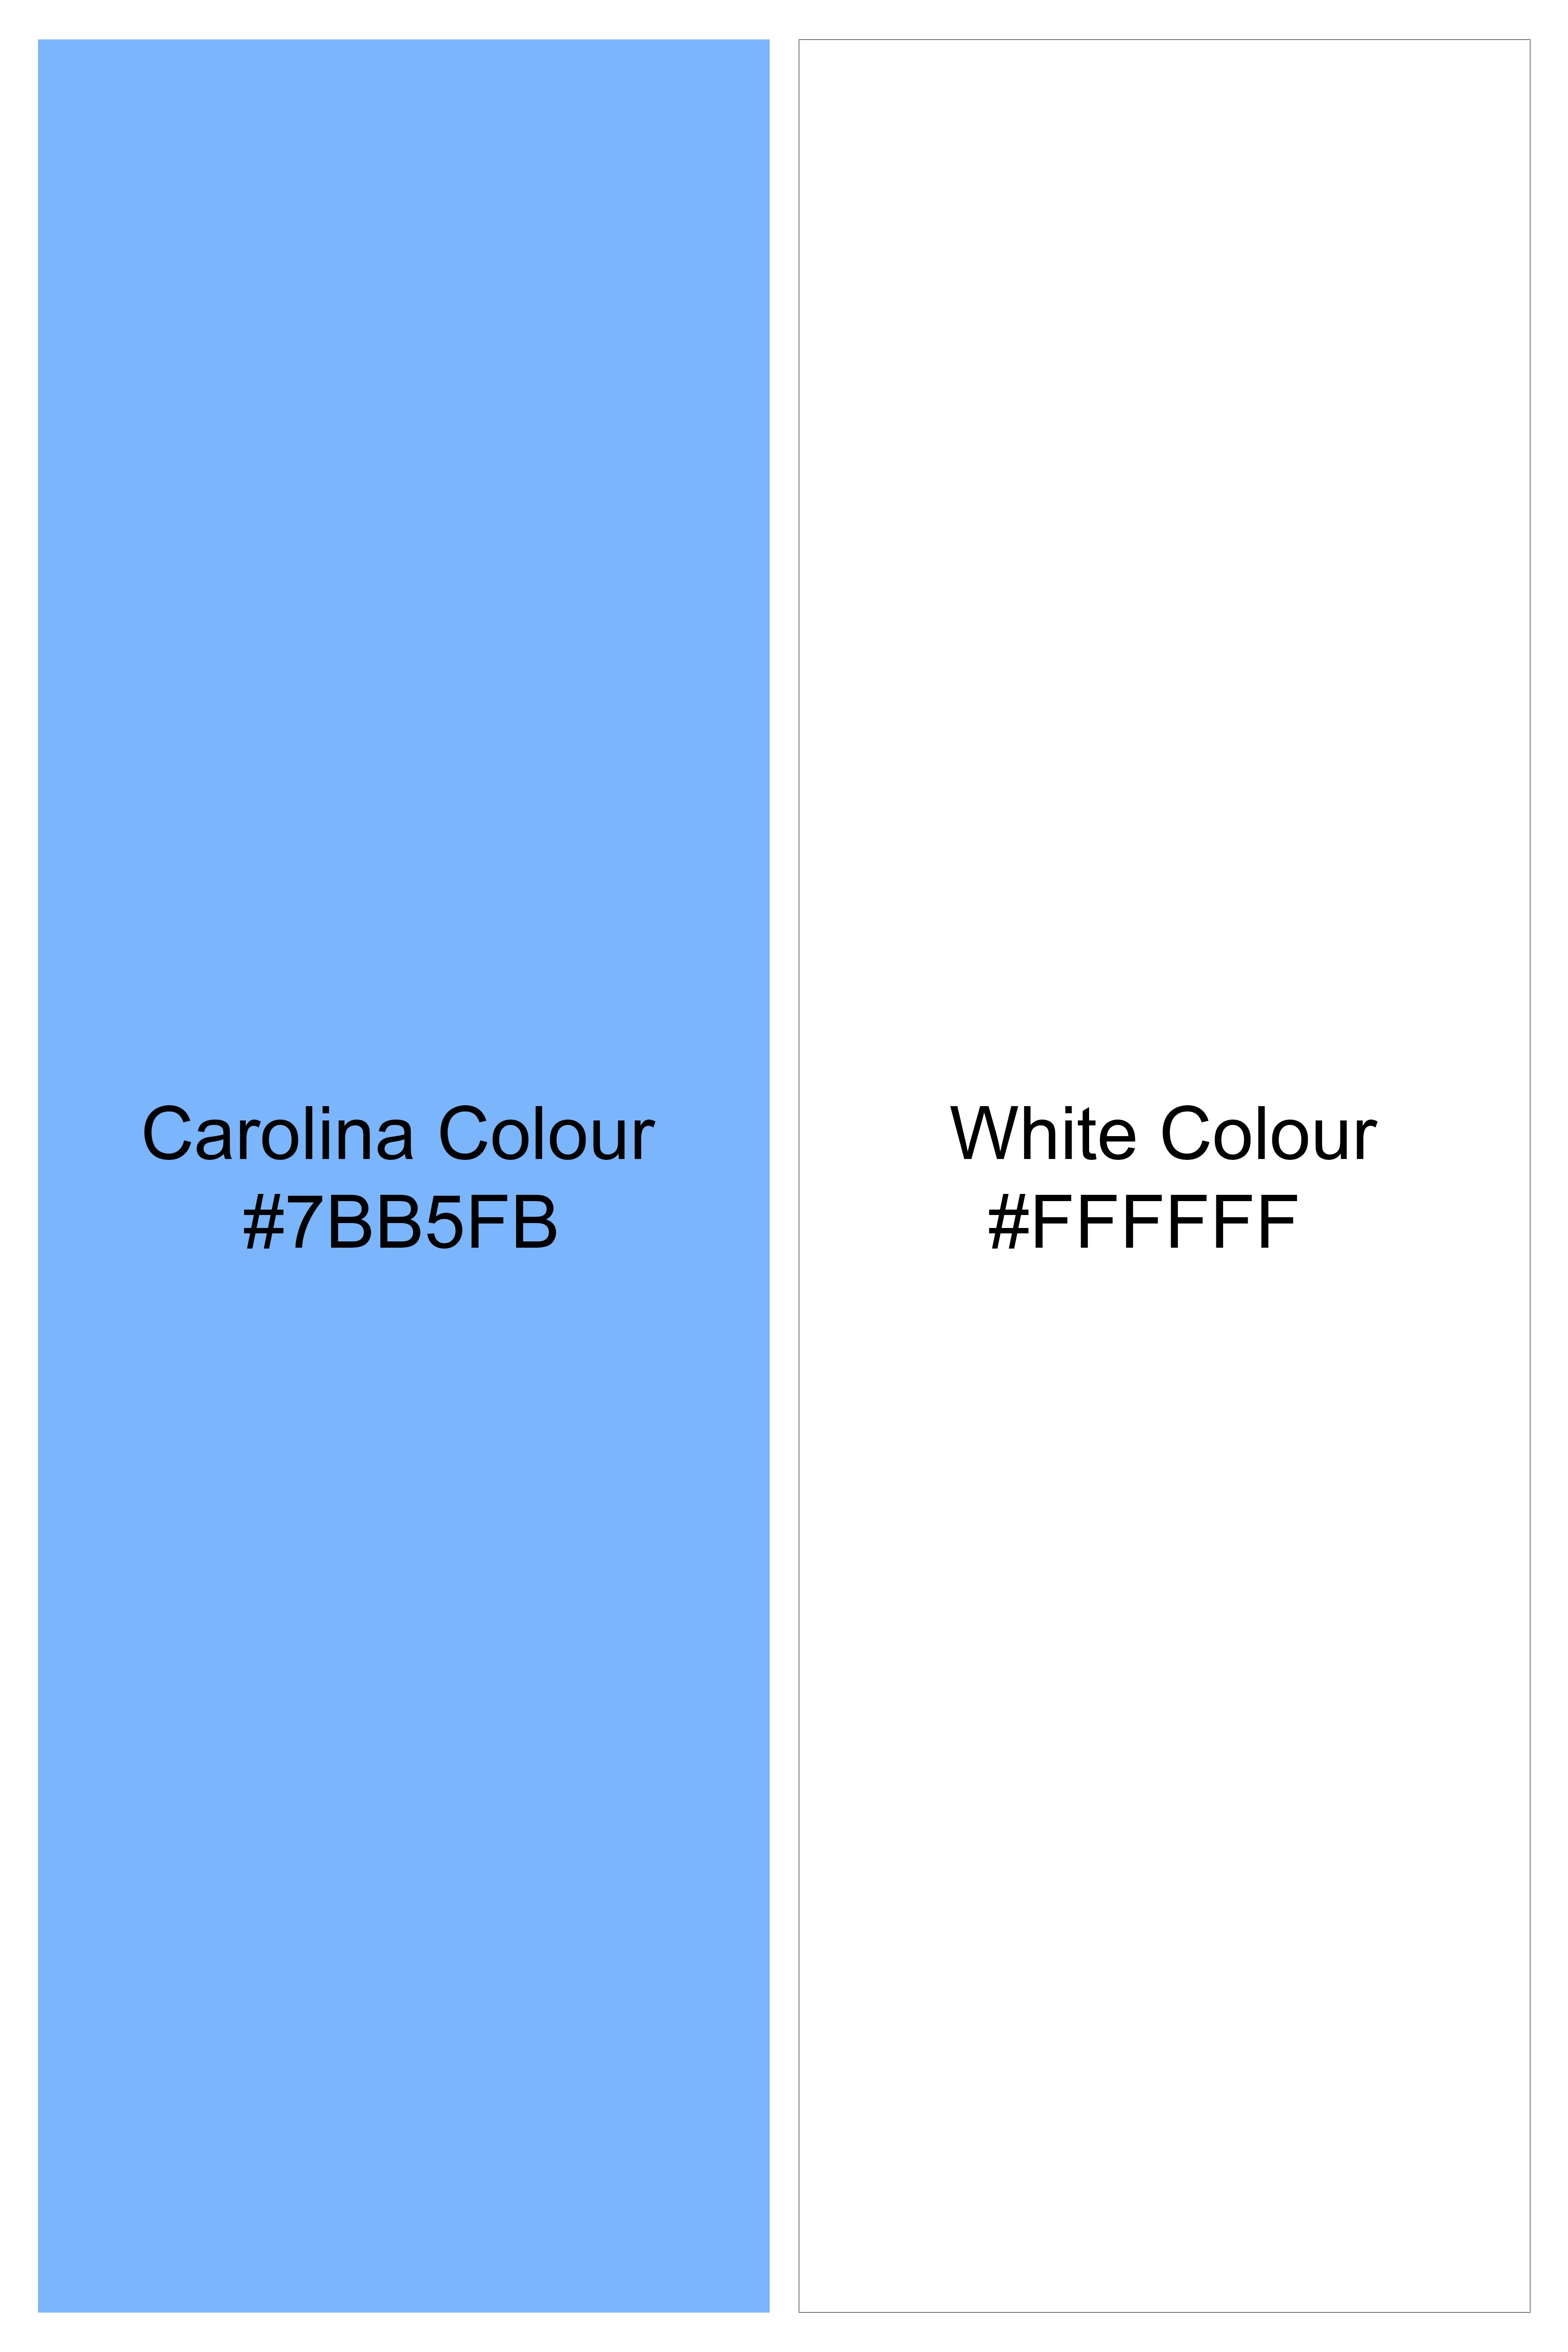 Carolina Blue and White Gingham Checkered Twill Premium Cotton Shirt